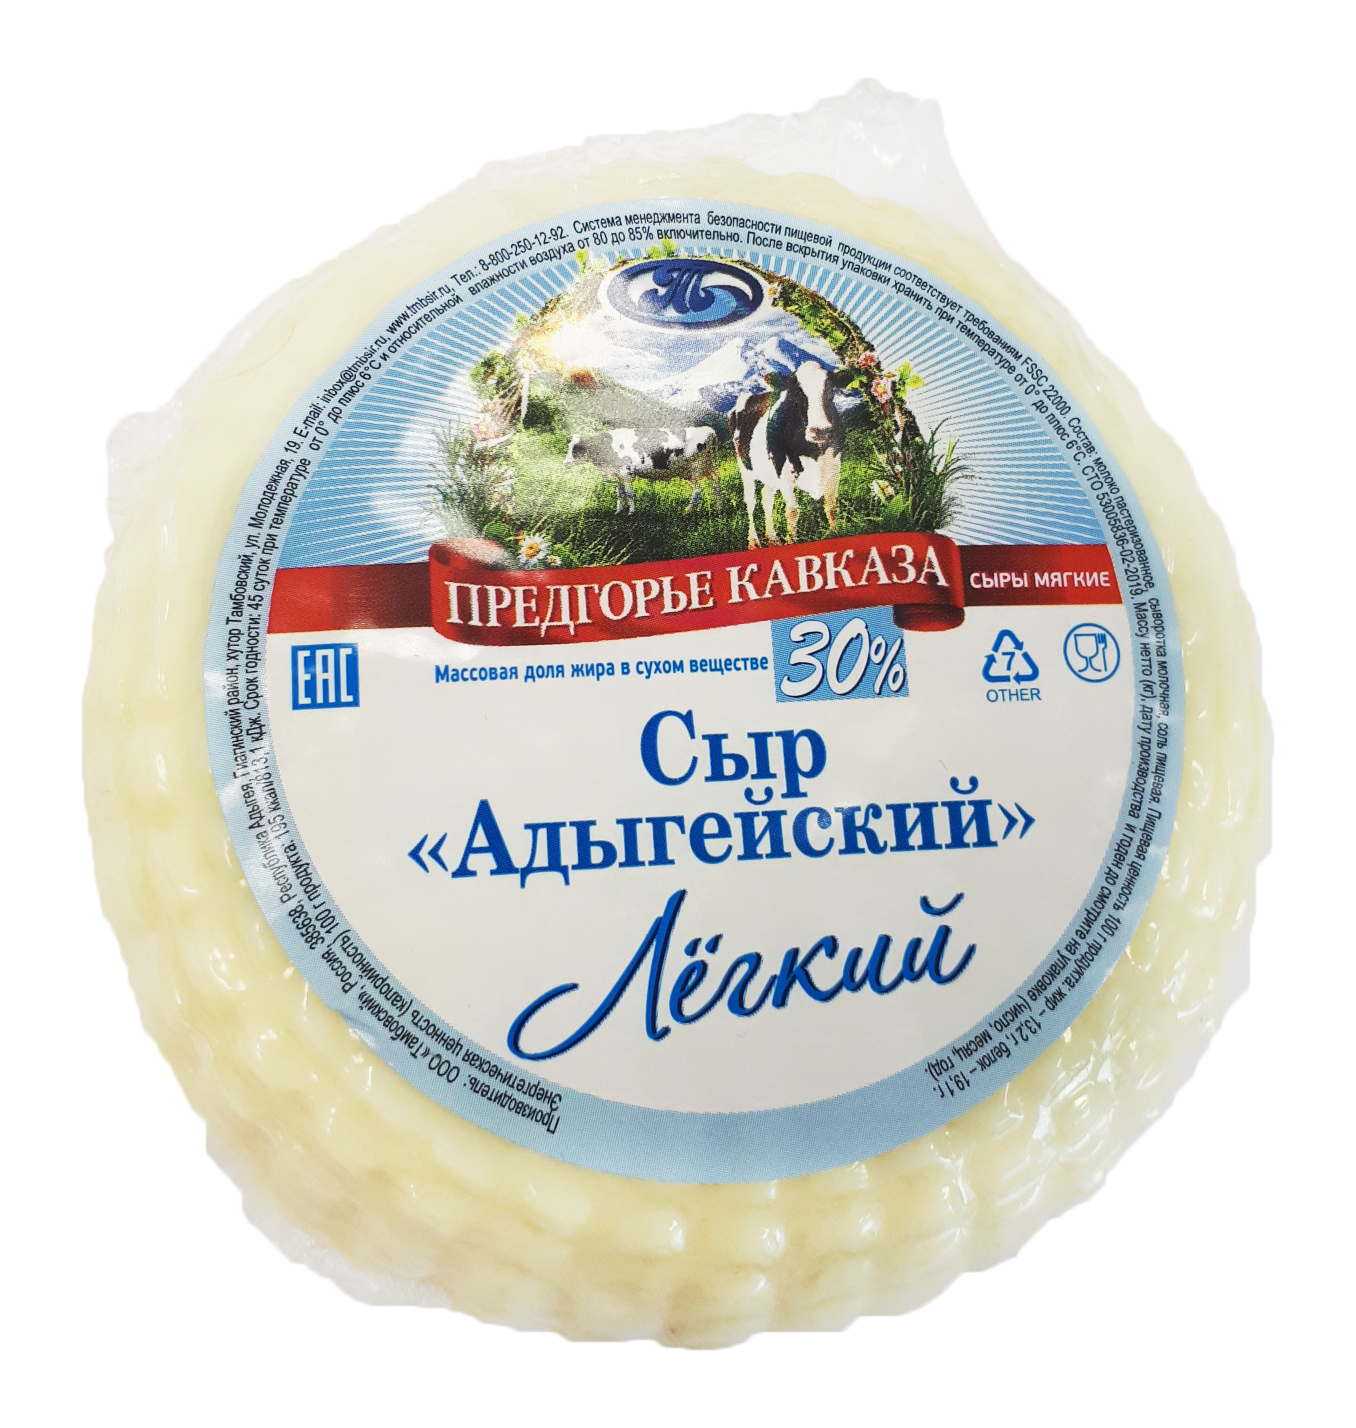 Адыгейский сыр - описание продукта, как выбирать, как готовить, читайте на steklorez69.ru